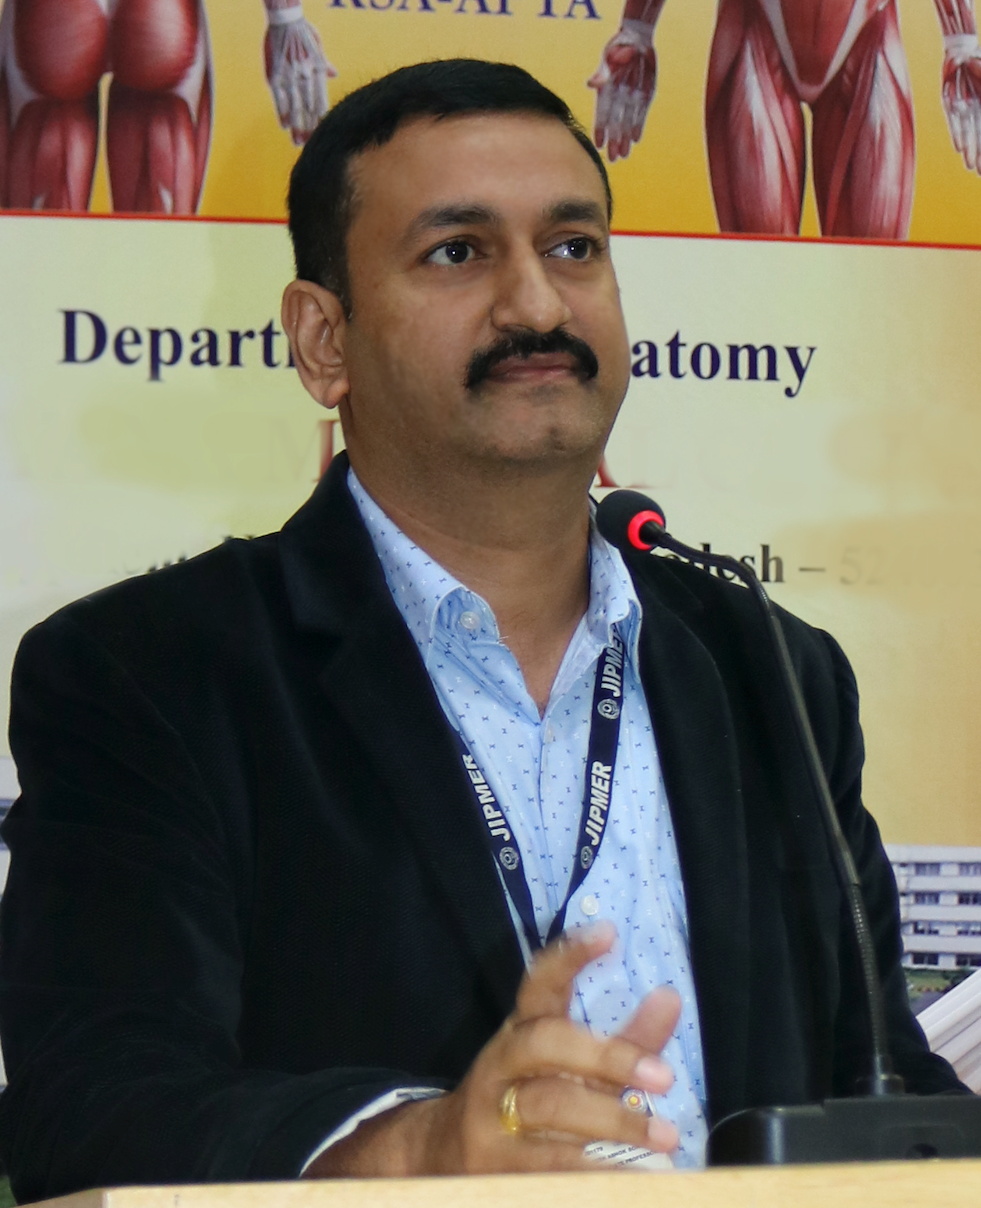 Dr Yogesh Sontakke, MBBS MD (Anatomy)